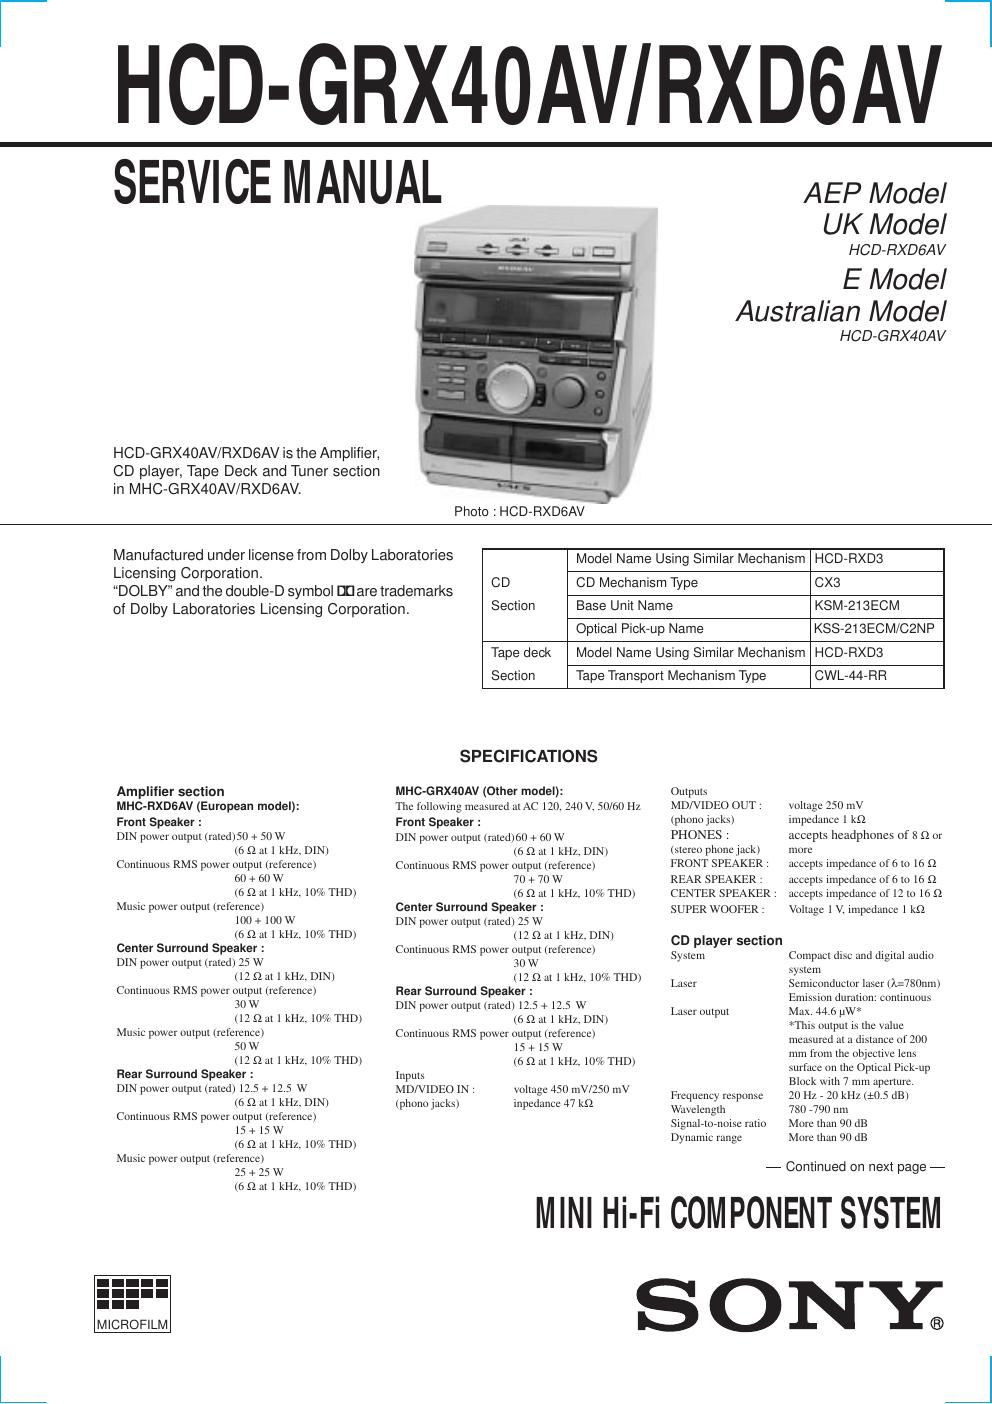 sony hcd grx 40 av service manual